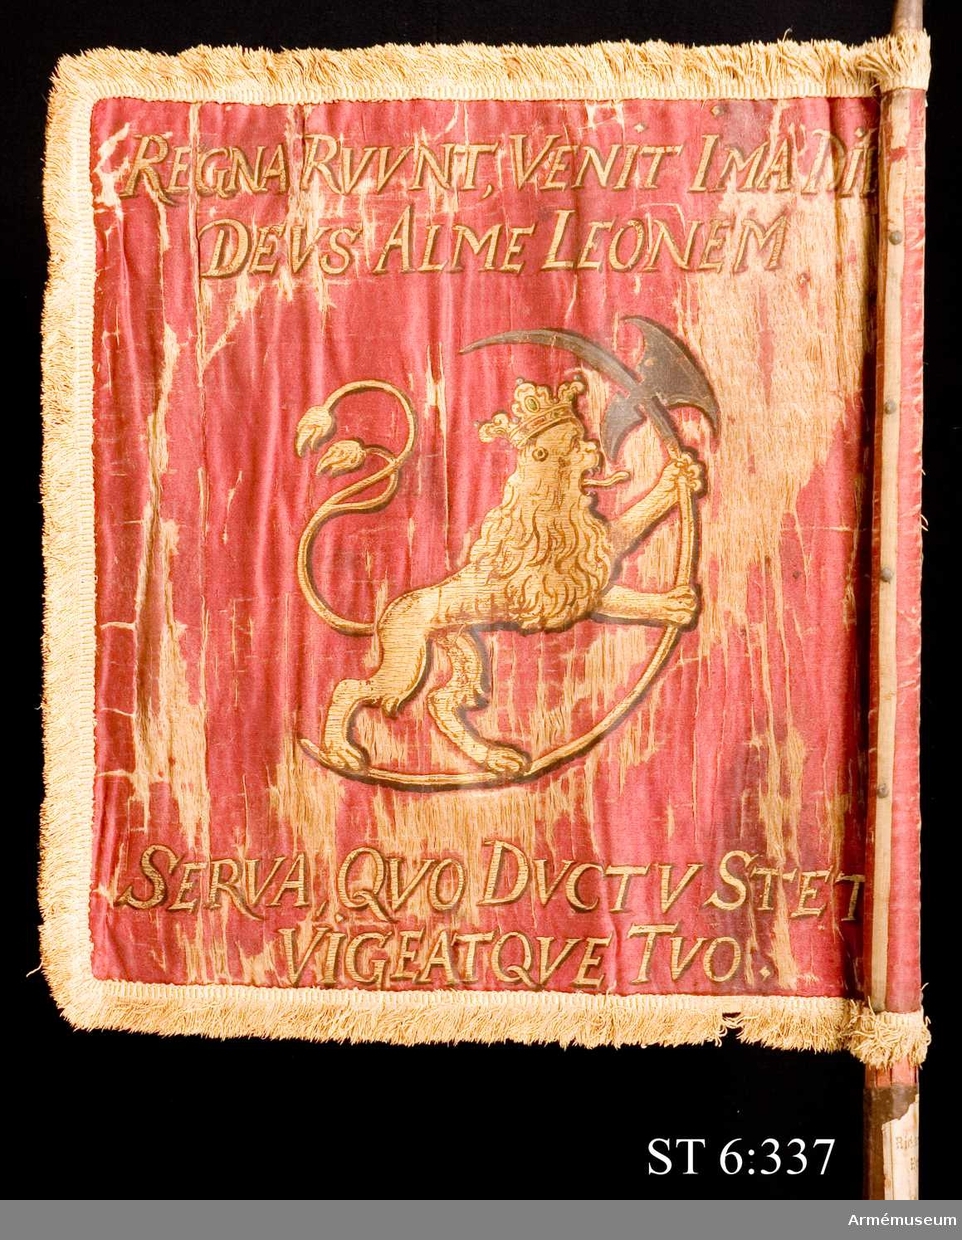 Duk av dubbel, röd sidenatlas med ljusbrun (urspr. röd?) silkefrans. Målat motiv i guld. På ena sidan den danske kungen Fredrik III:s monogram under krona. Därunder hans valspråk: DOMINUS PROVIDEBIT (Herren utser). På andra sidan det norska lejonet med St Olafs yxa. Kring lejonet devisen: REGNA RUUNT, VENIT IMA DIES, DEUS ALME LEONEM, SERVA, QVO DUCTU STET VIGEATQUE TUO vilket betyder: "Riken störtar, yttersta dagen kommer, du milde Gud, bevara lejonet så att det står fast och välbehållet under din ledning".
Duken är lindad runt stången och fastspikad med tännlikor på tre ljust bruna ripsband.
Standarstång med kannelyrer. Avbruten under greppet. Rödmålad och försedd med påspikade järnskenor samt löpande bärring.
Spets av järn, bladformig och genombruten. 16 cm hög.